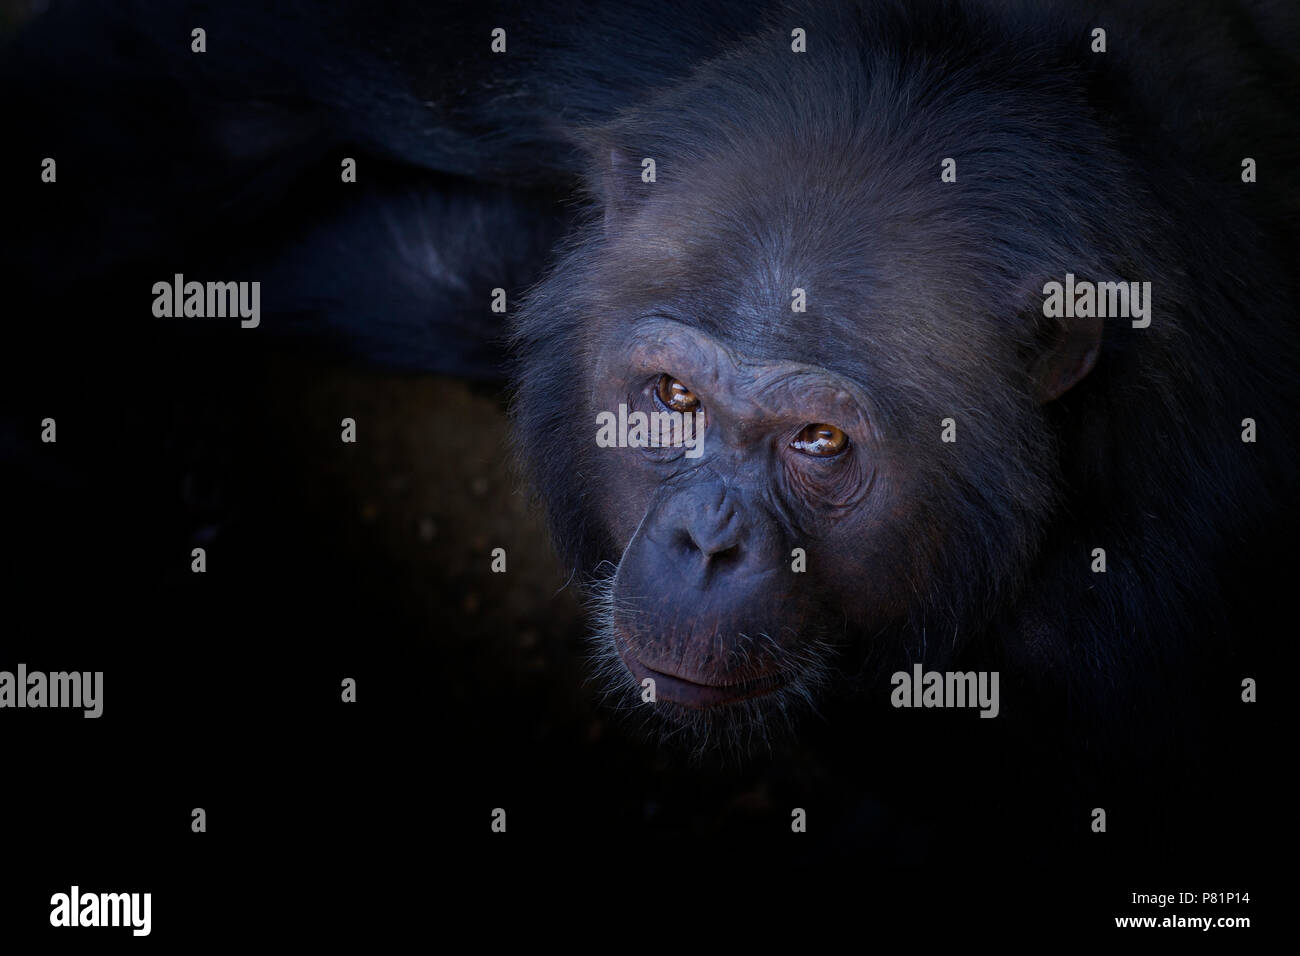 Wild Chimpanzee Nahaufnahme, Porträt, von Angesicht zu Angesicht, einschüchternd und beängstigend Stockfoto